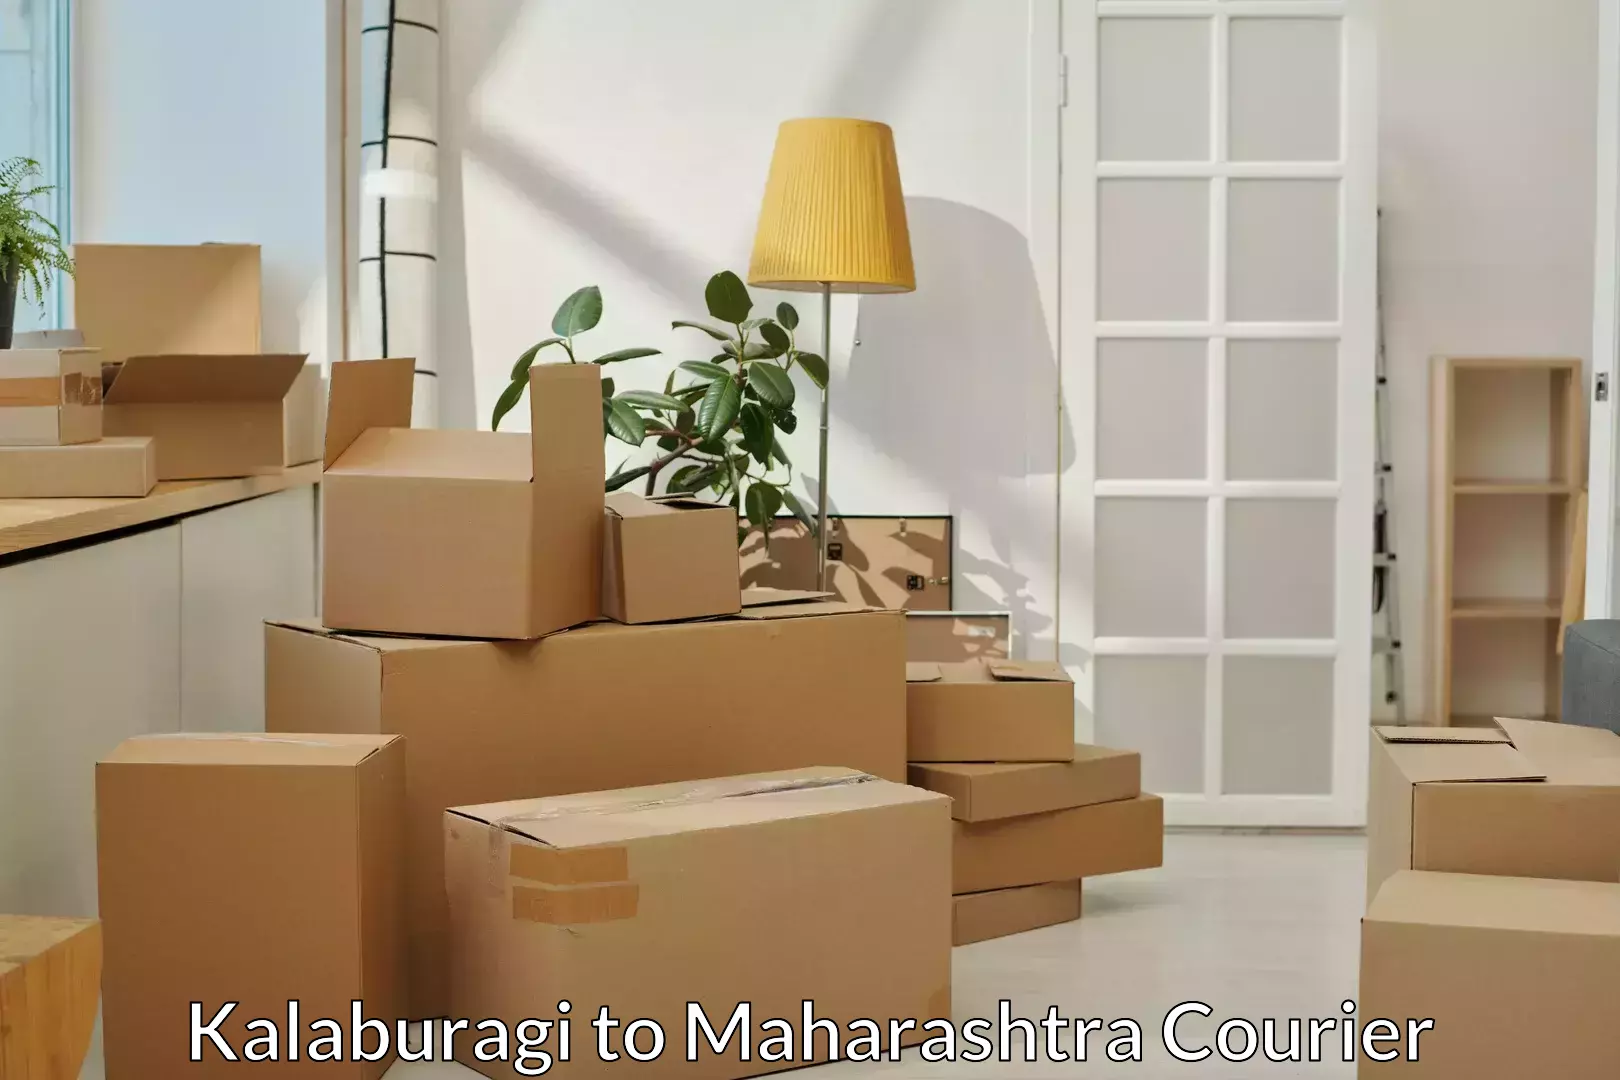 Efficient furniture relocation Kalaburagi to Tata Institute of Social Sciences Mumbai